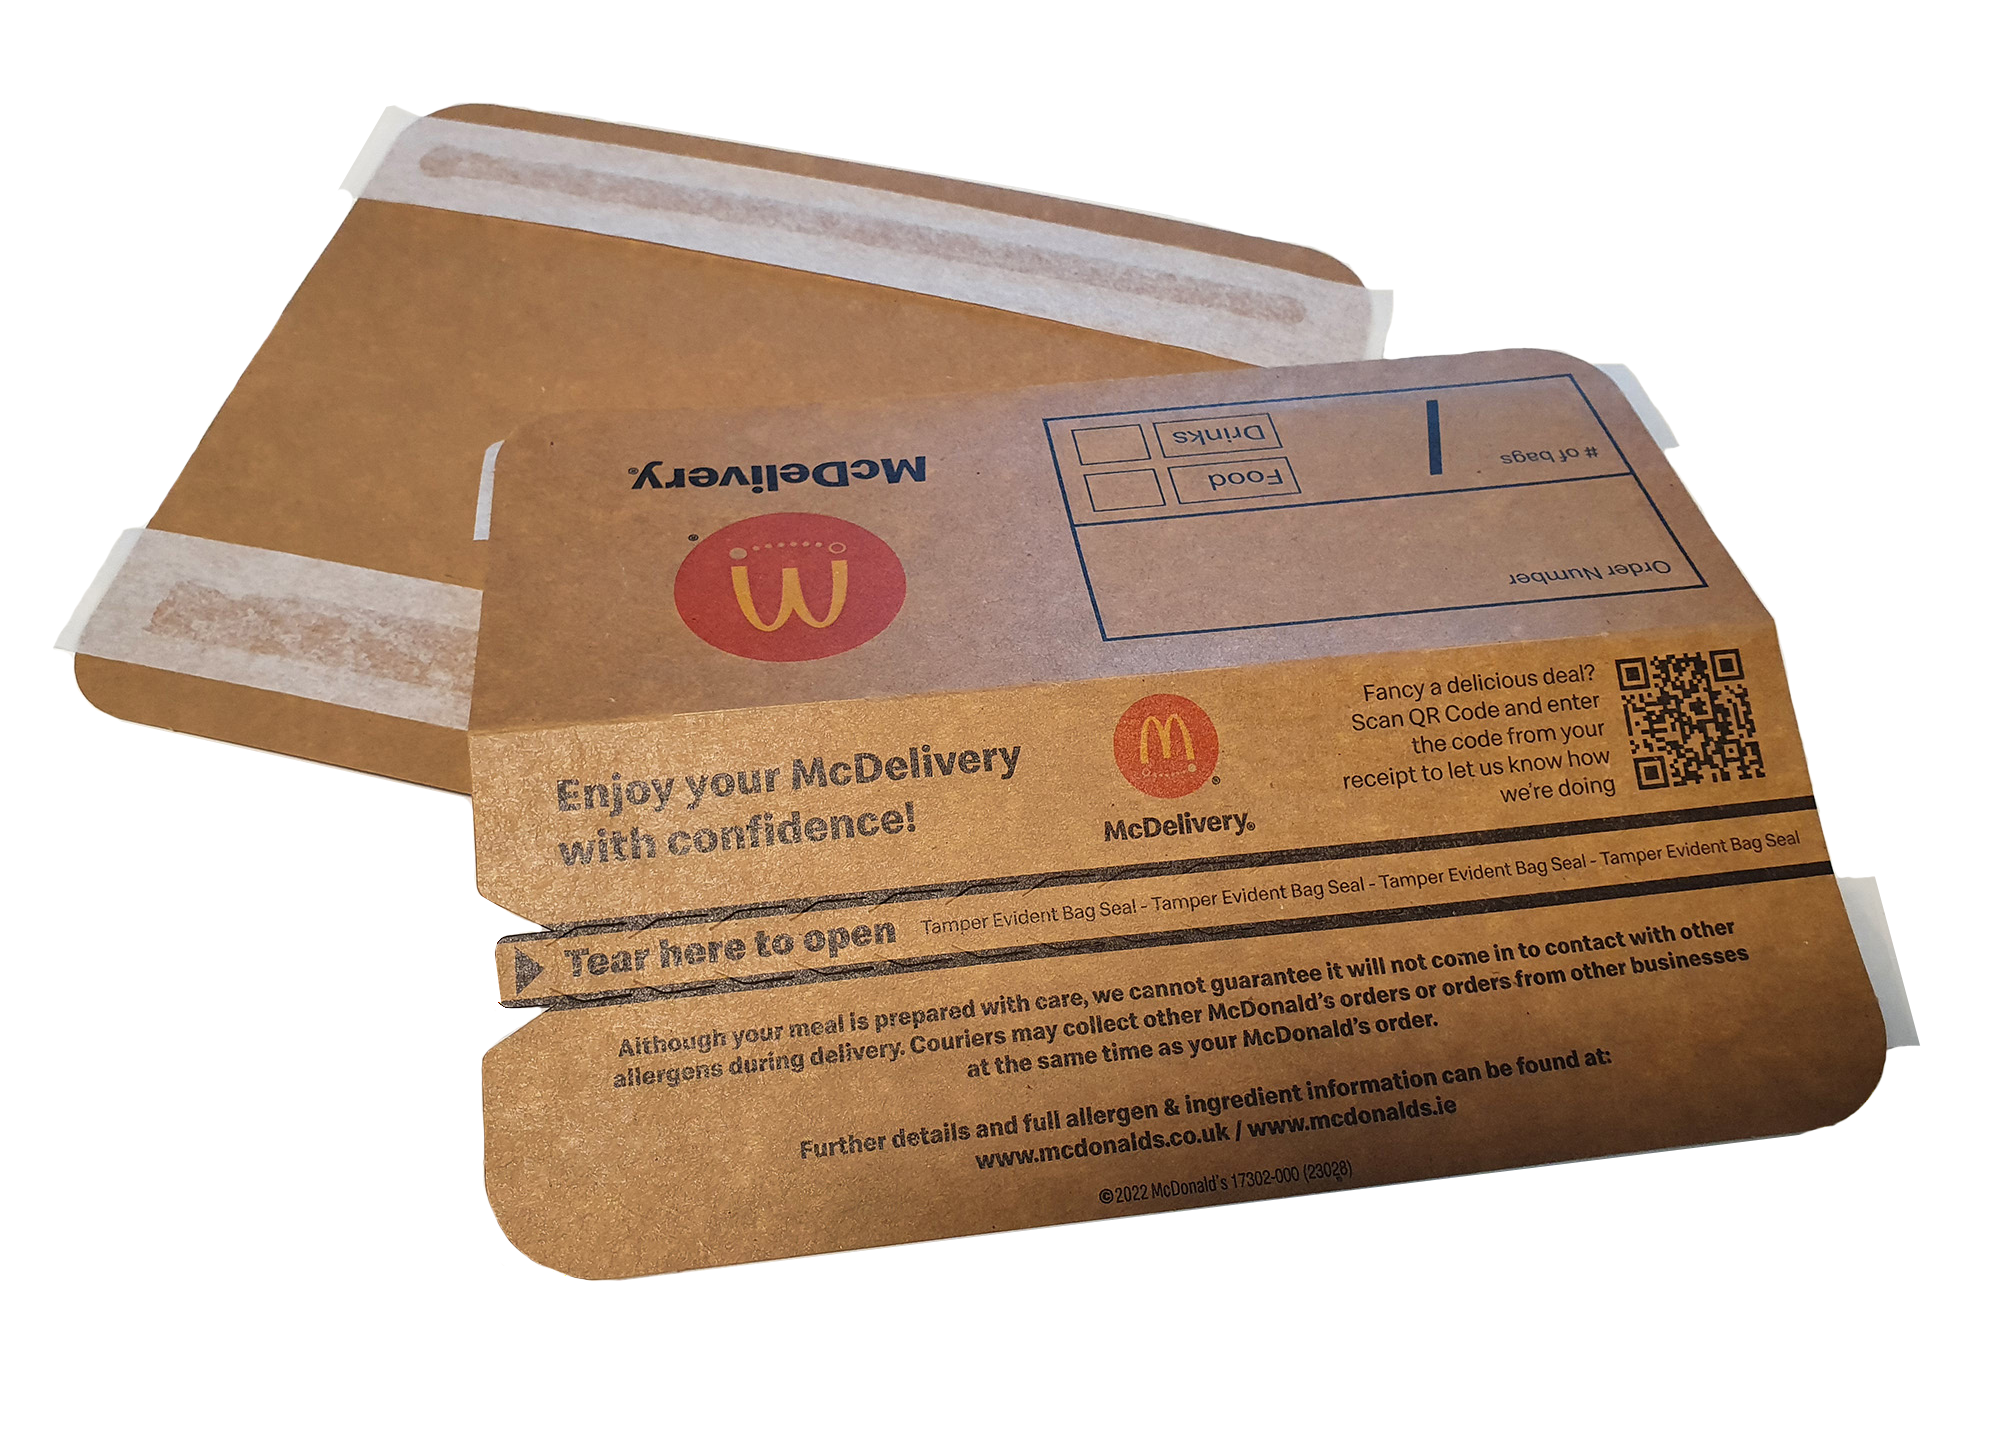 Brazalete McDonald's Delivery